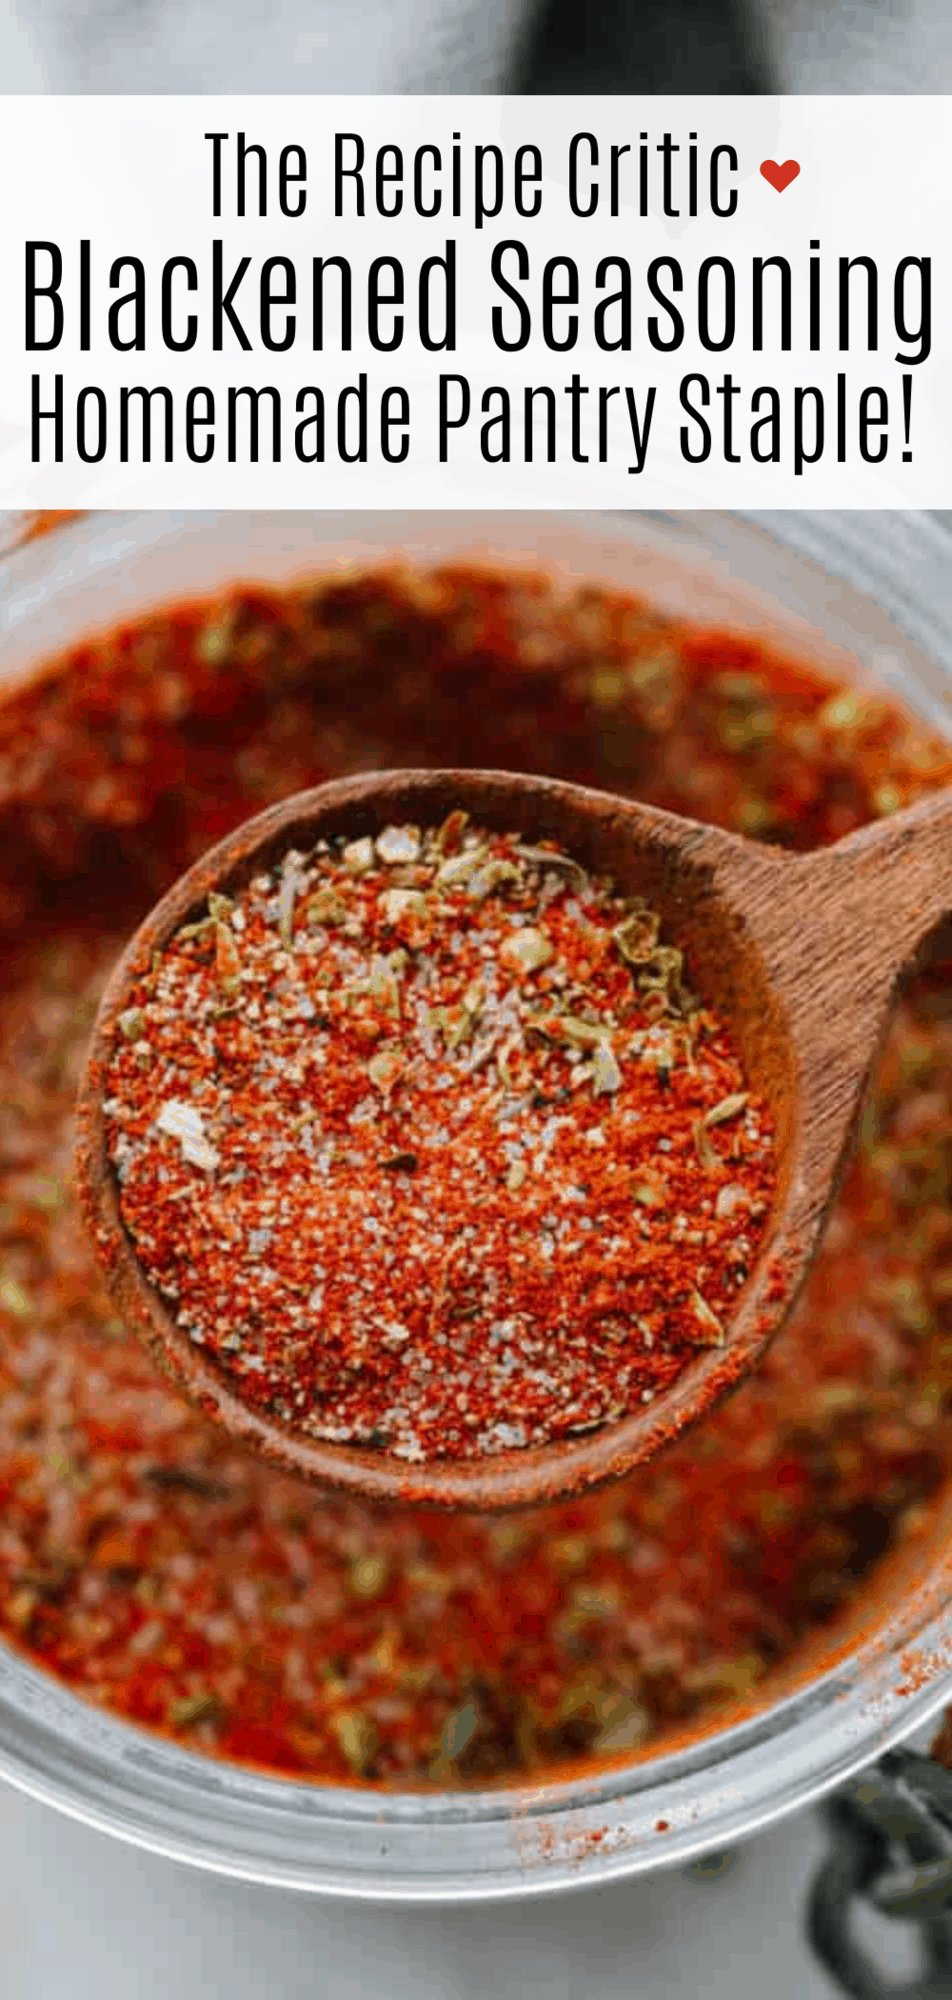 How to Make Homemade Blackened Seasoning Recipe - 1